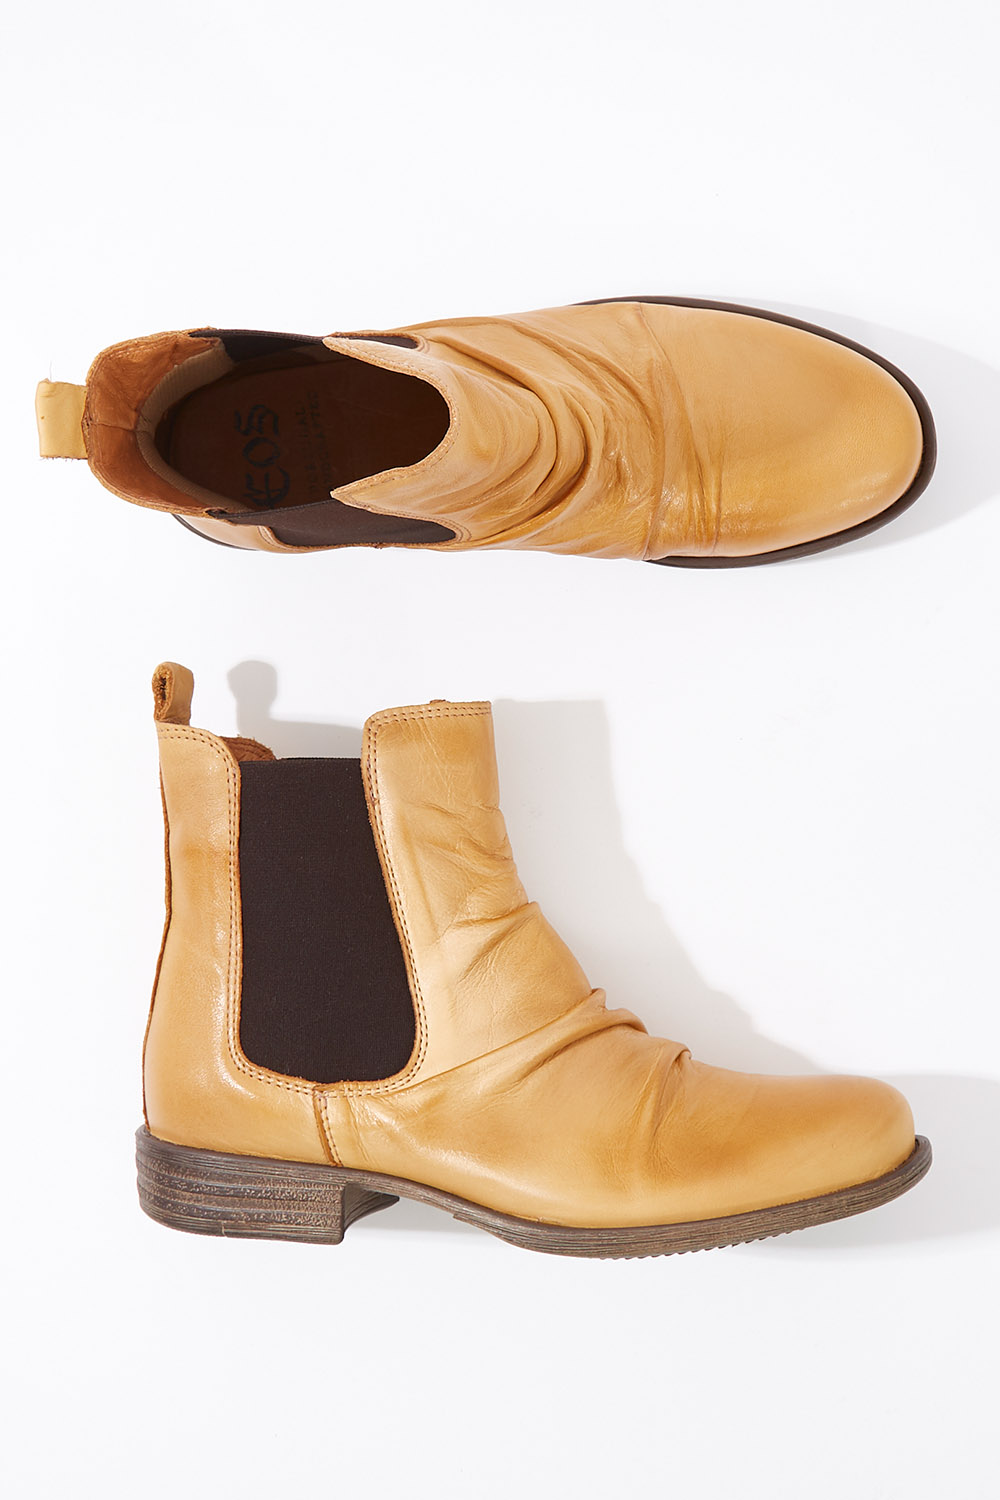 eos willo boots sale